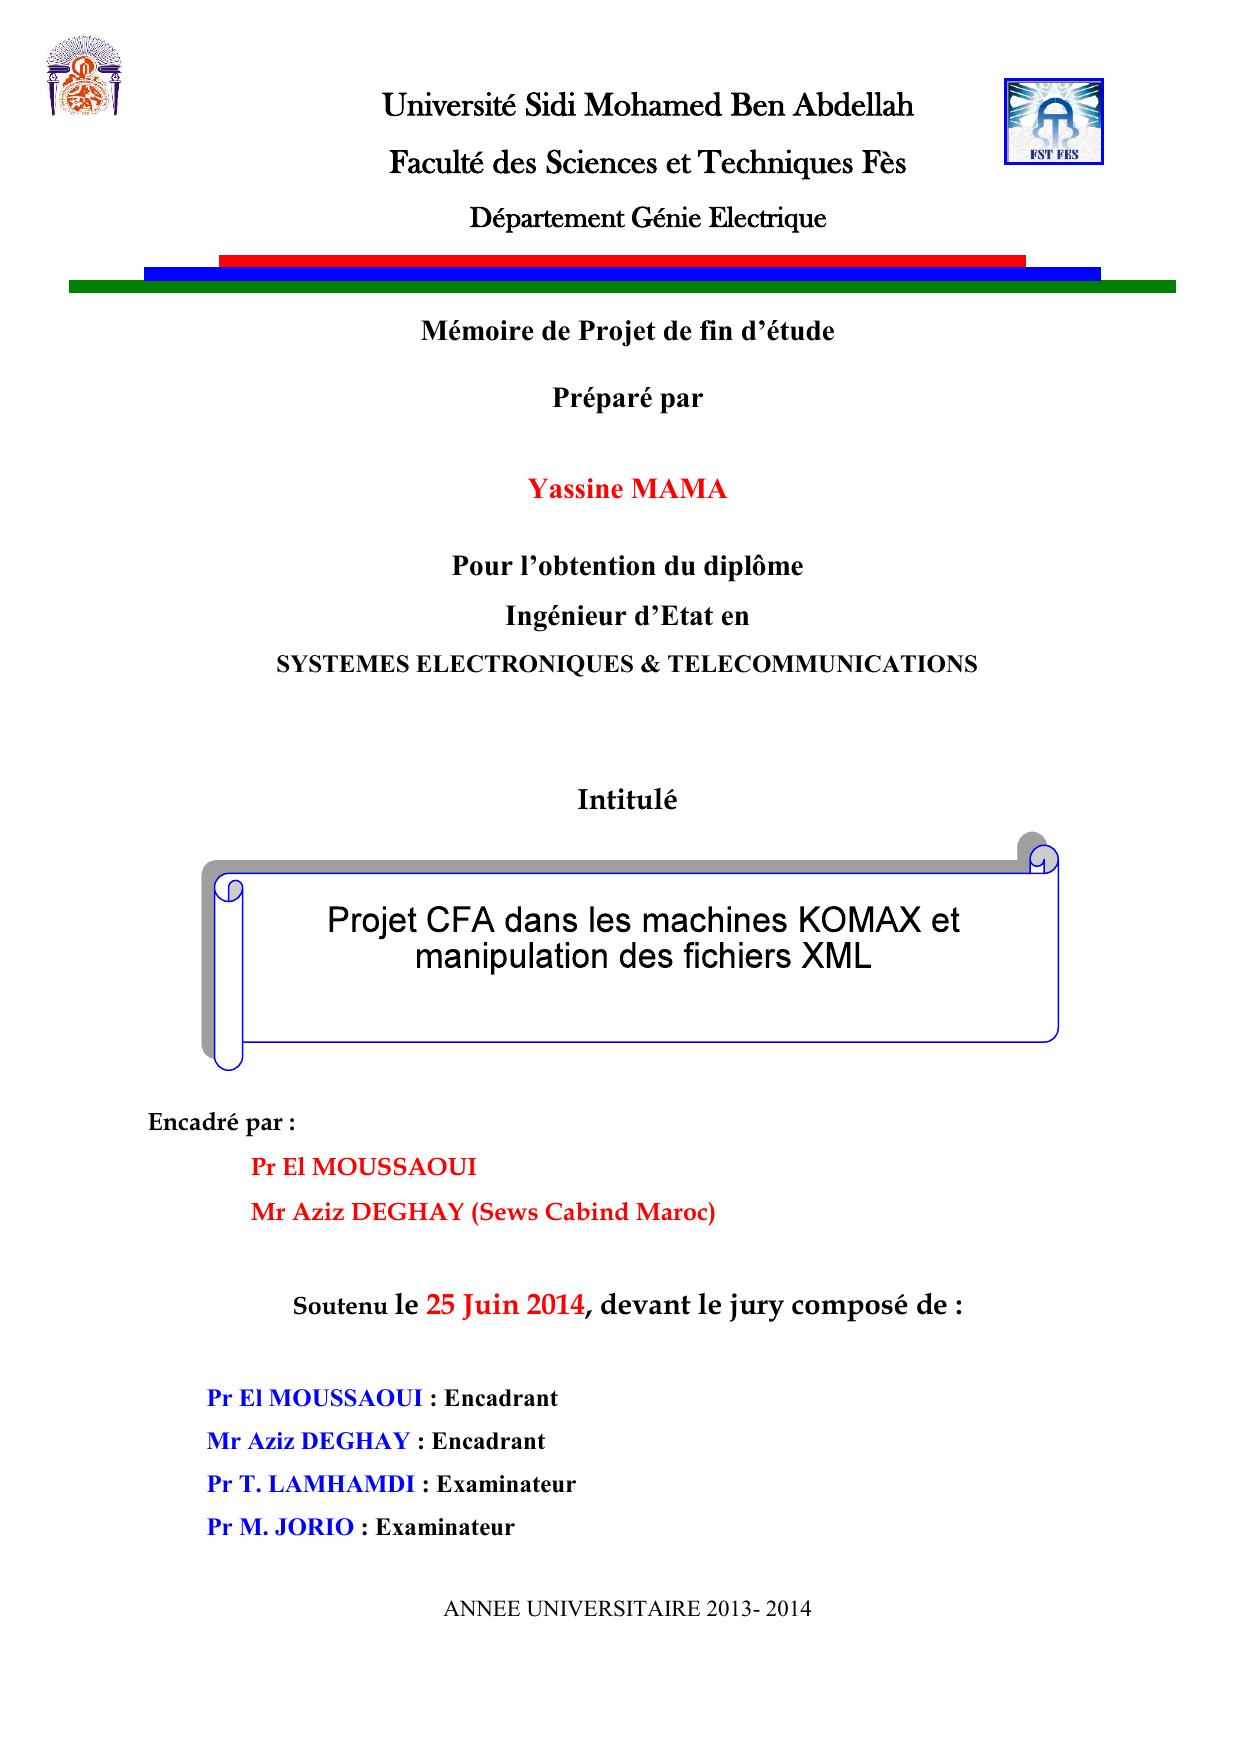 Projet CFA dans les machines KOMAX et manipulation des fichiers XML